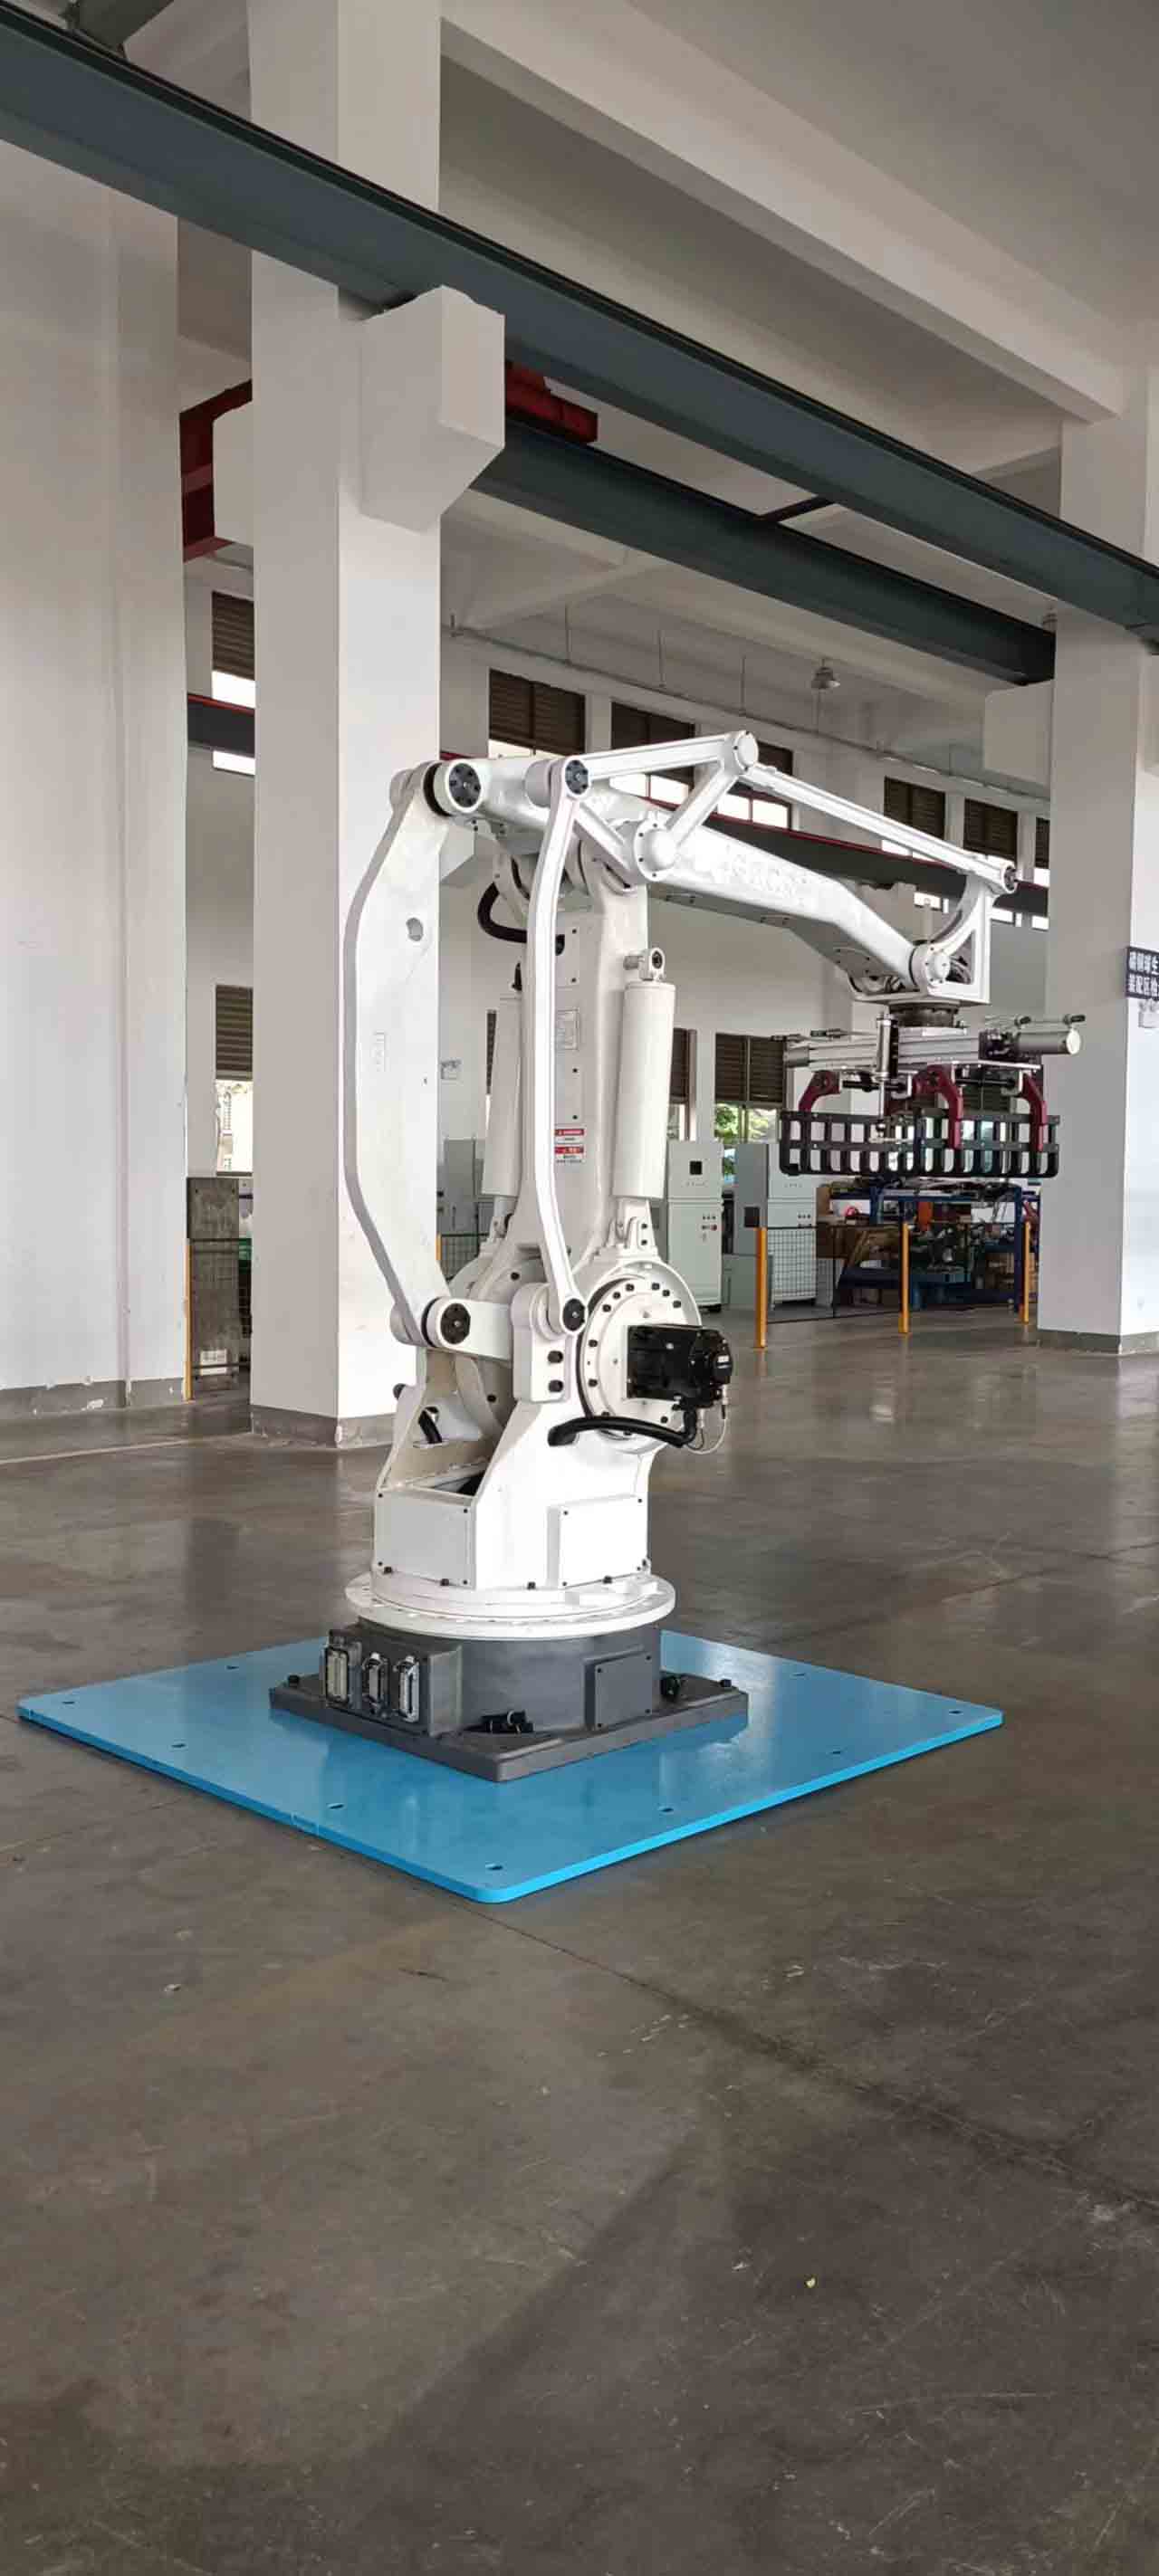 Робот-палетоукладчик грузоподъемностью 500 кг